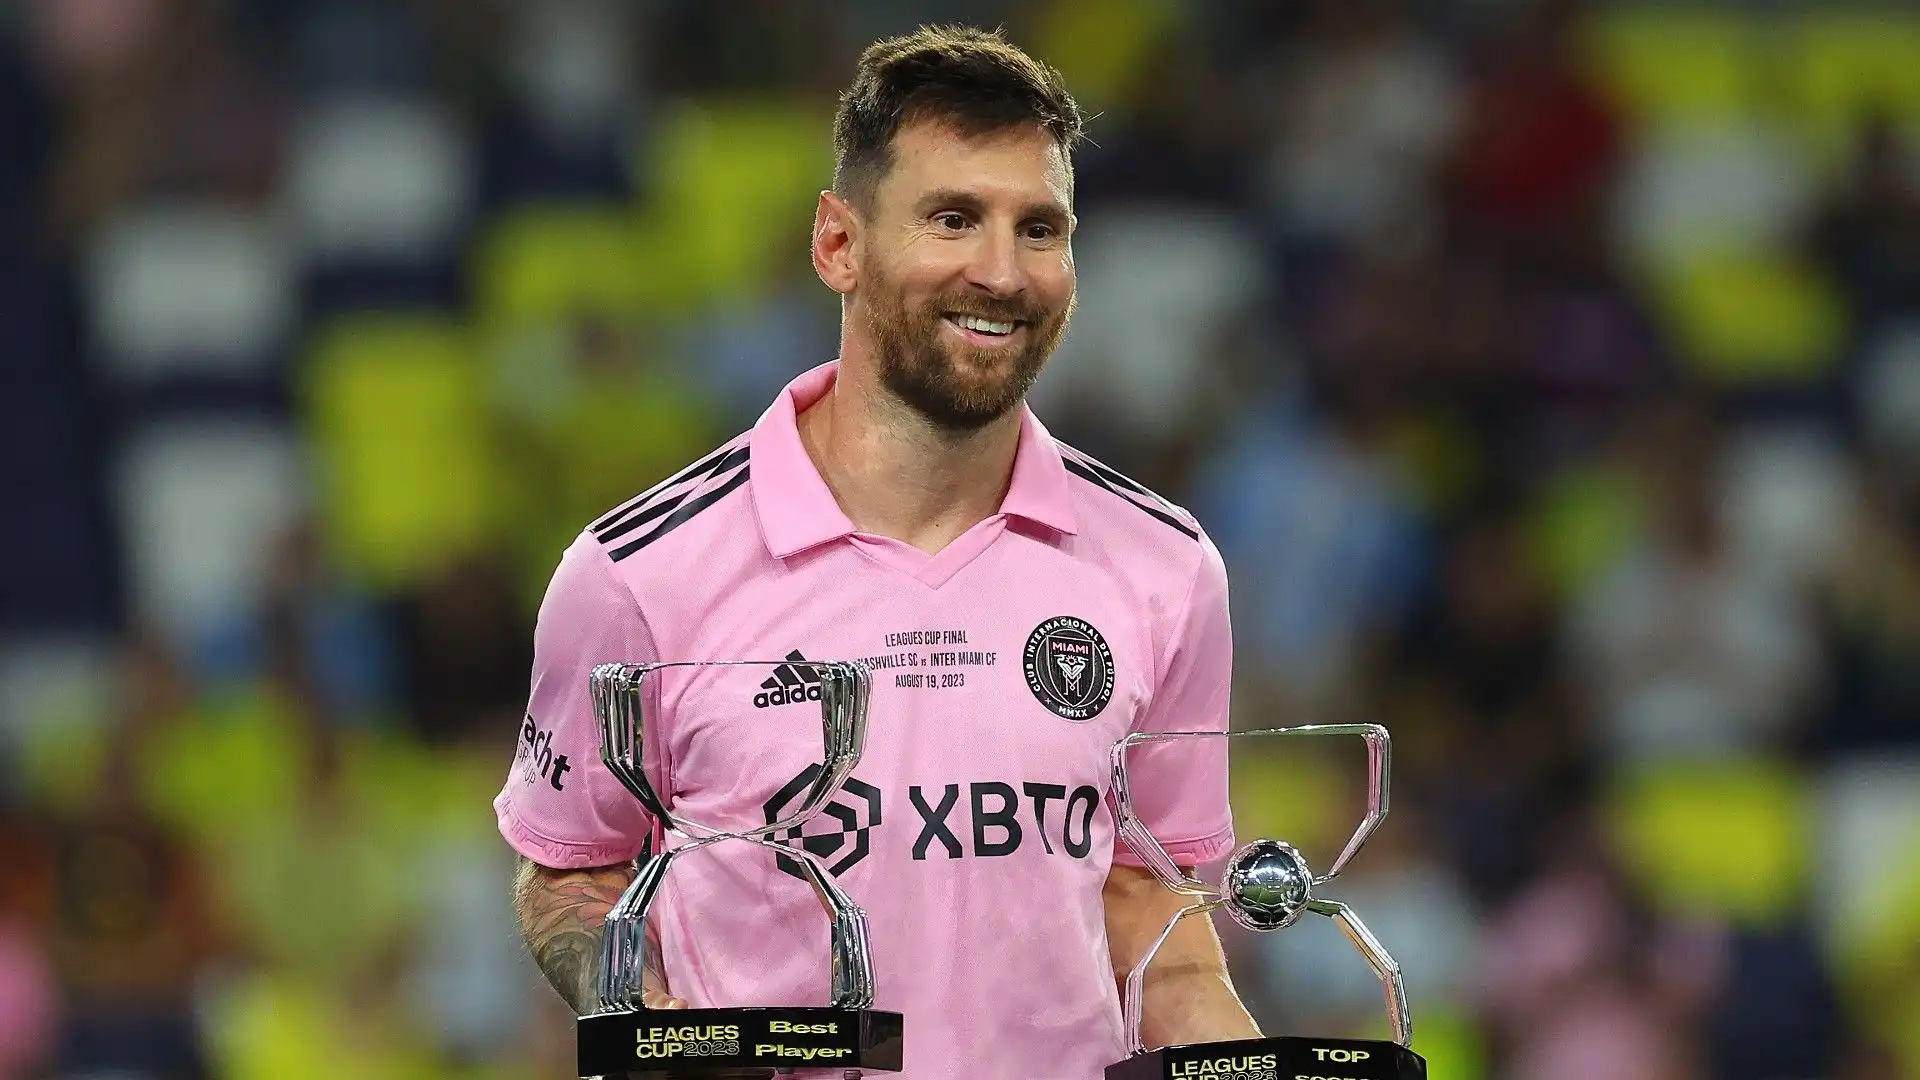 3- Terzo posto per l'eterno Lionel Messi